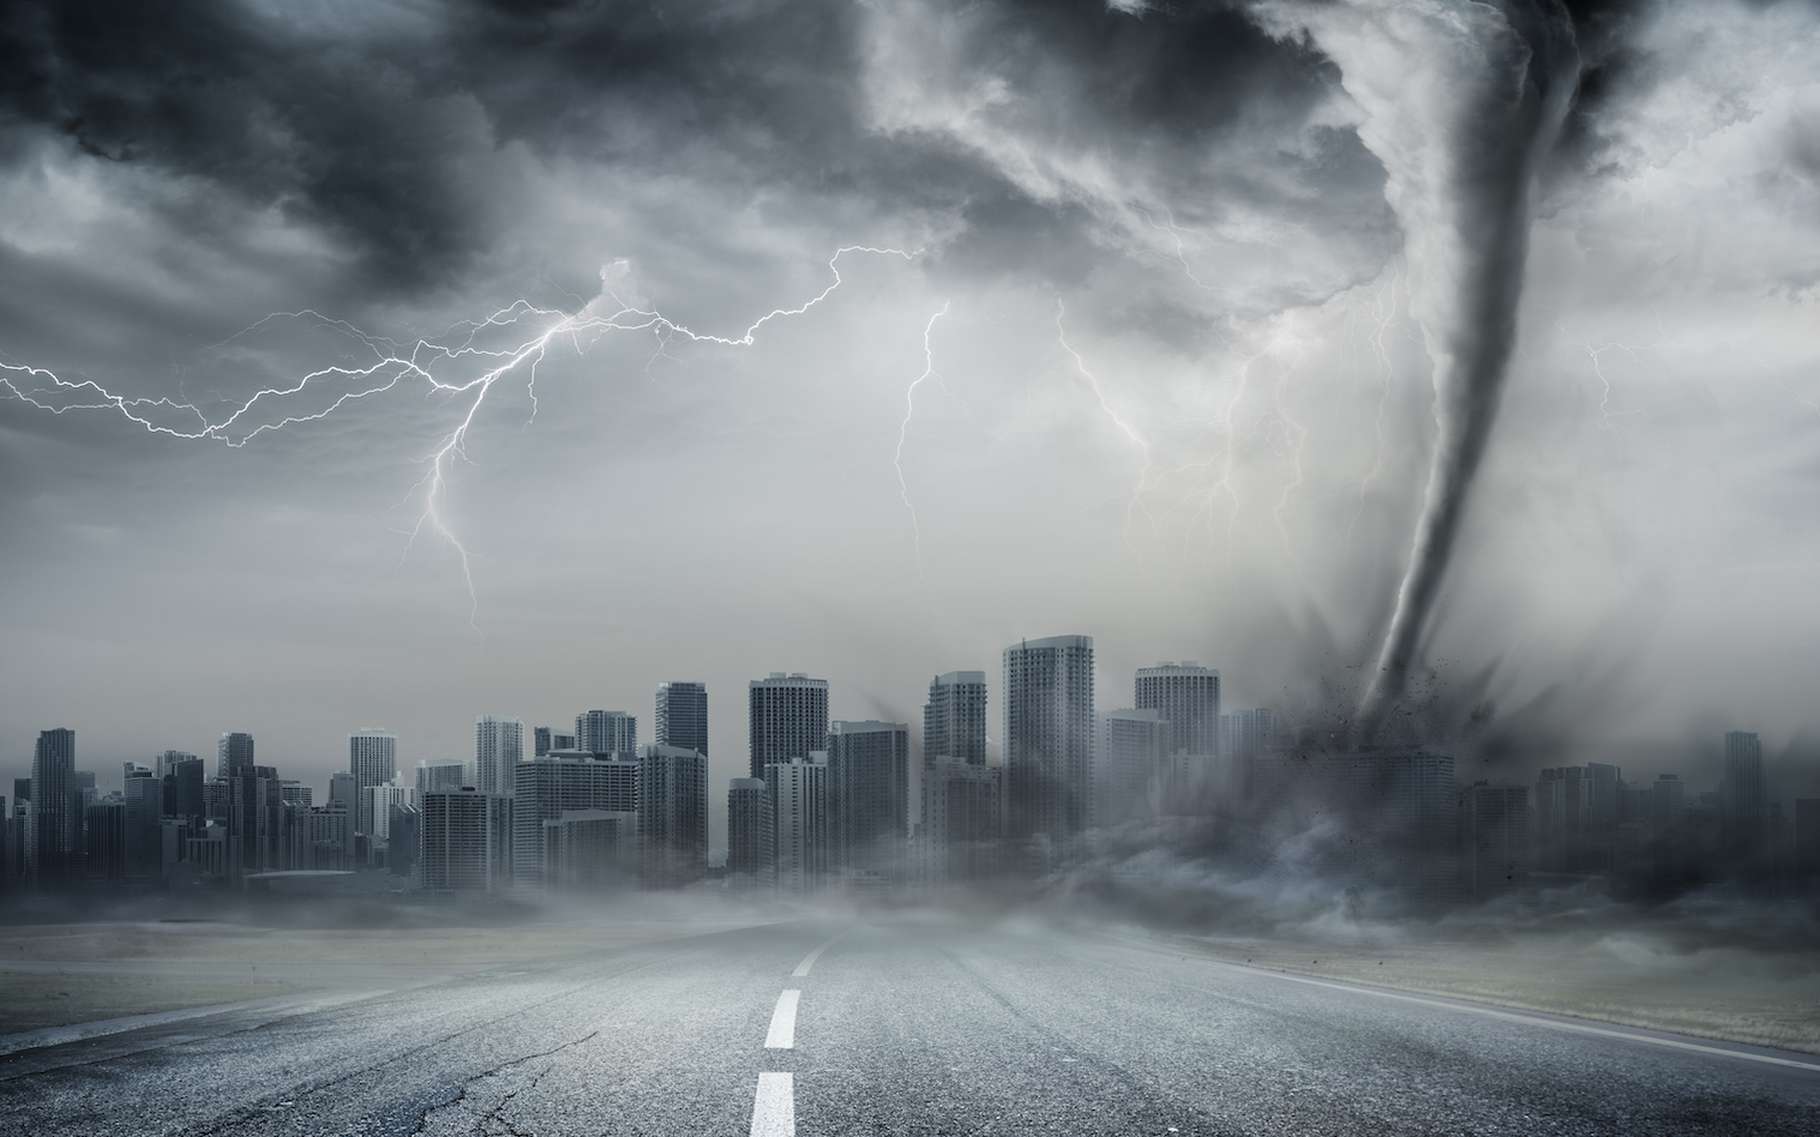 Bien que violente, la tornade est un petit phénomène comparé à l'immensité des ouragans. © Romolo Tavani, Adobe Stock